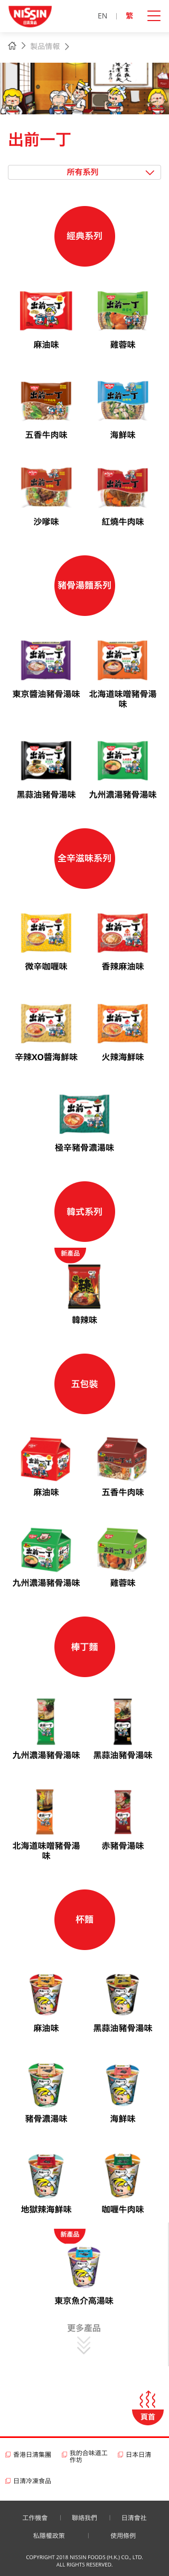 Nissin Foods HK website screenshot for mobile version 4 of 5